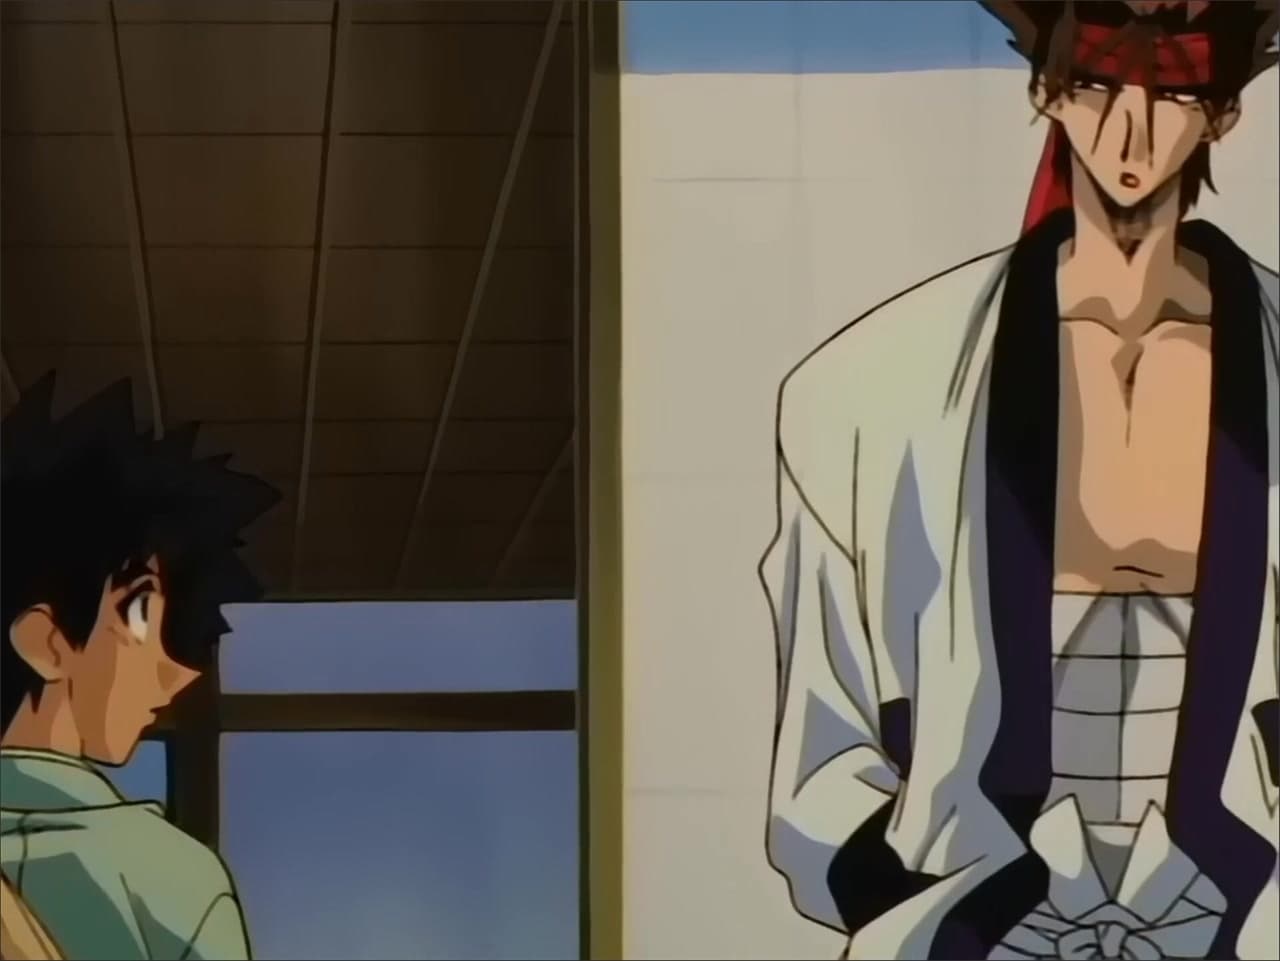 Rurouni Kenshin - Season 2 Episode 19 : Purgatory Bursts into Flames: The Destiny of Makoto Shishio